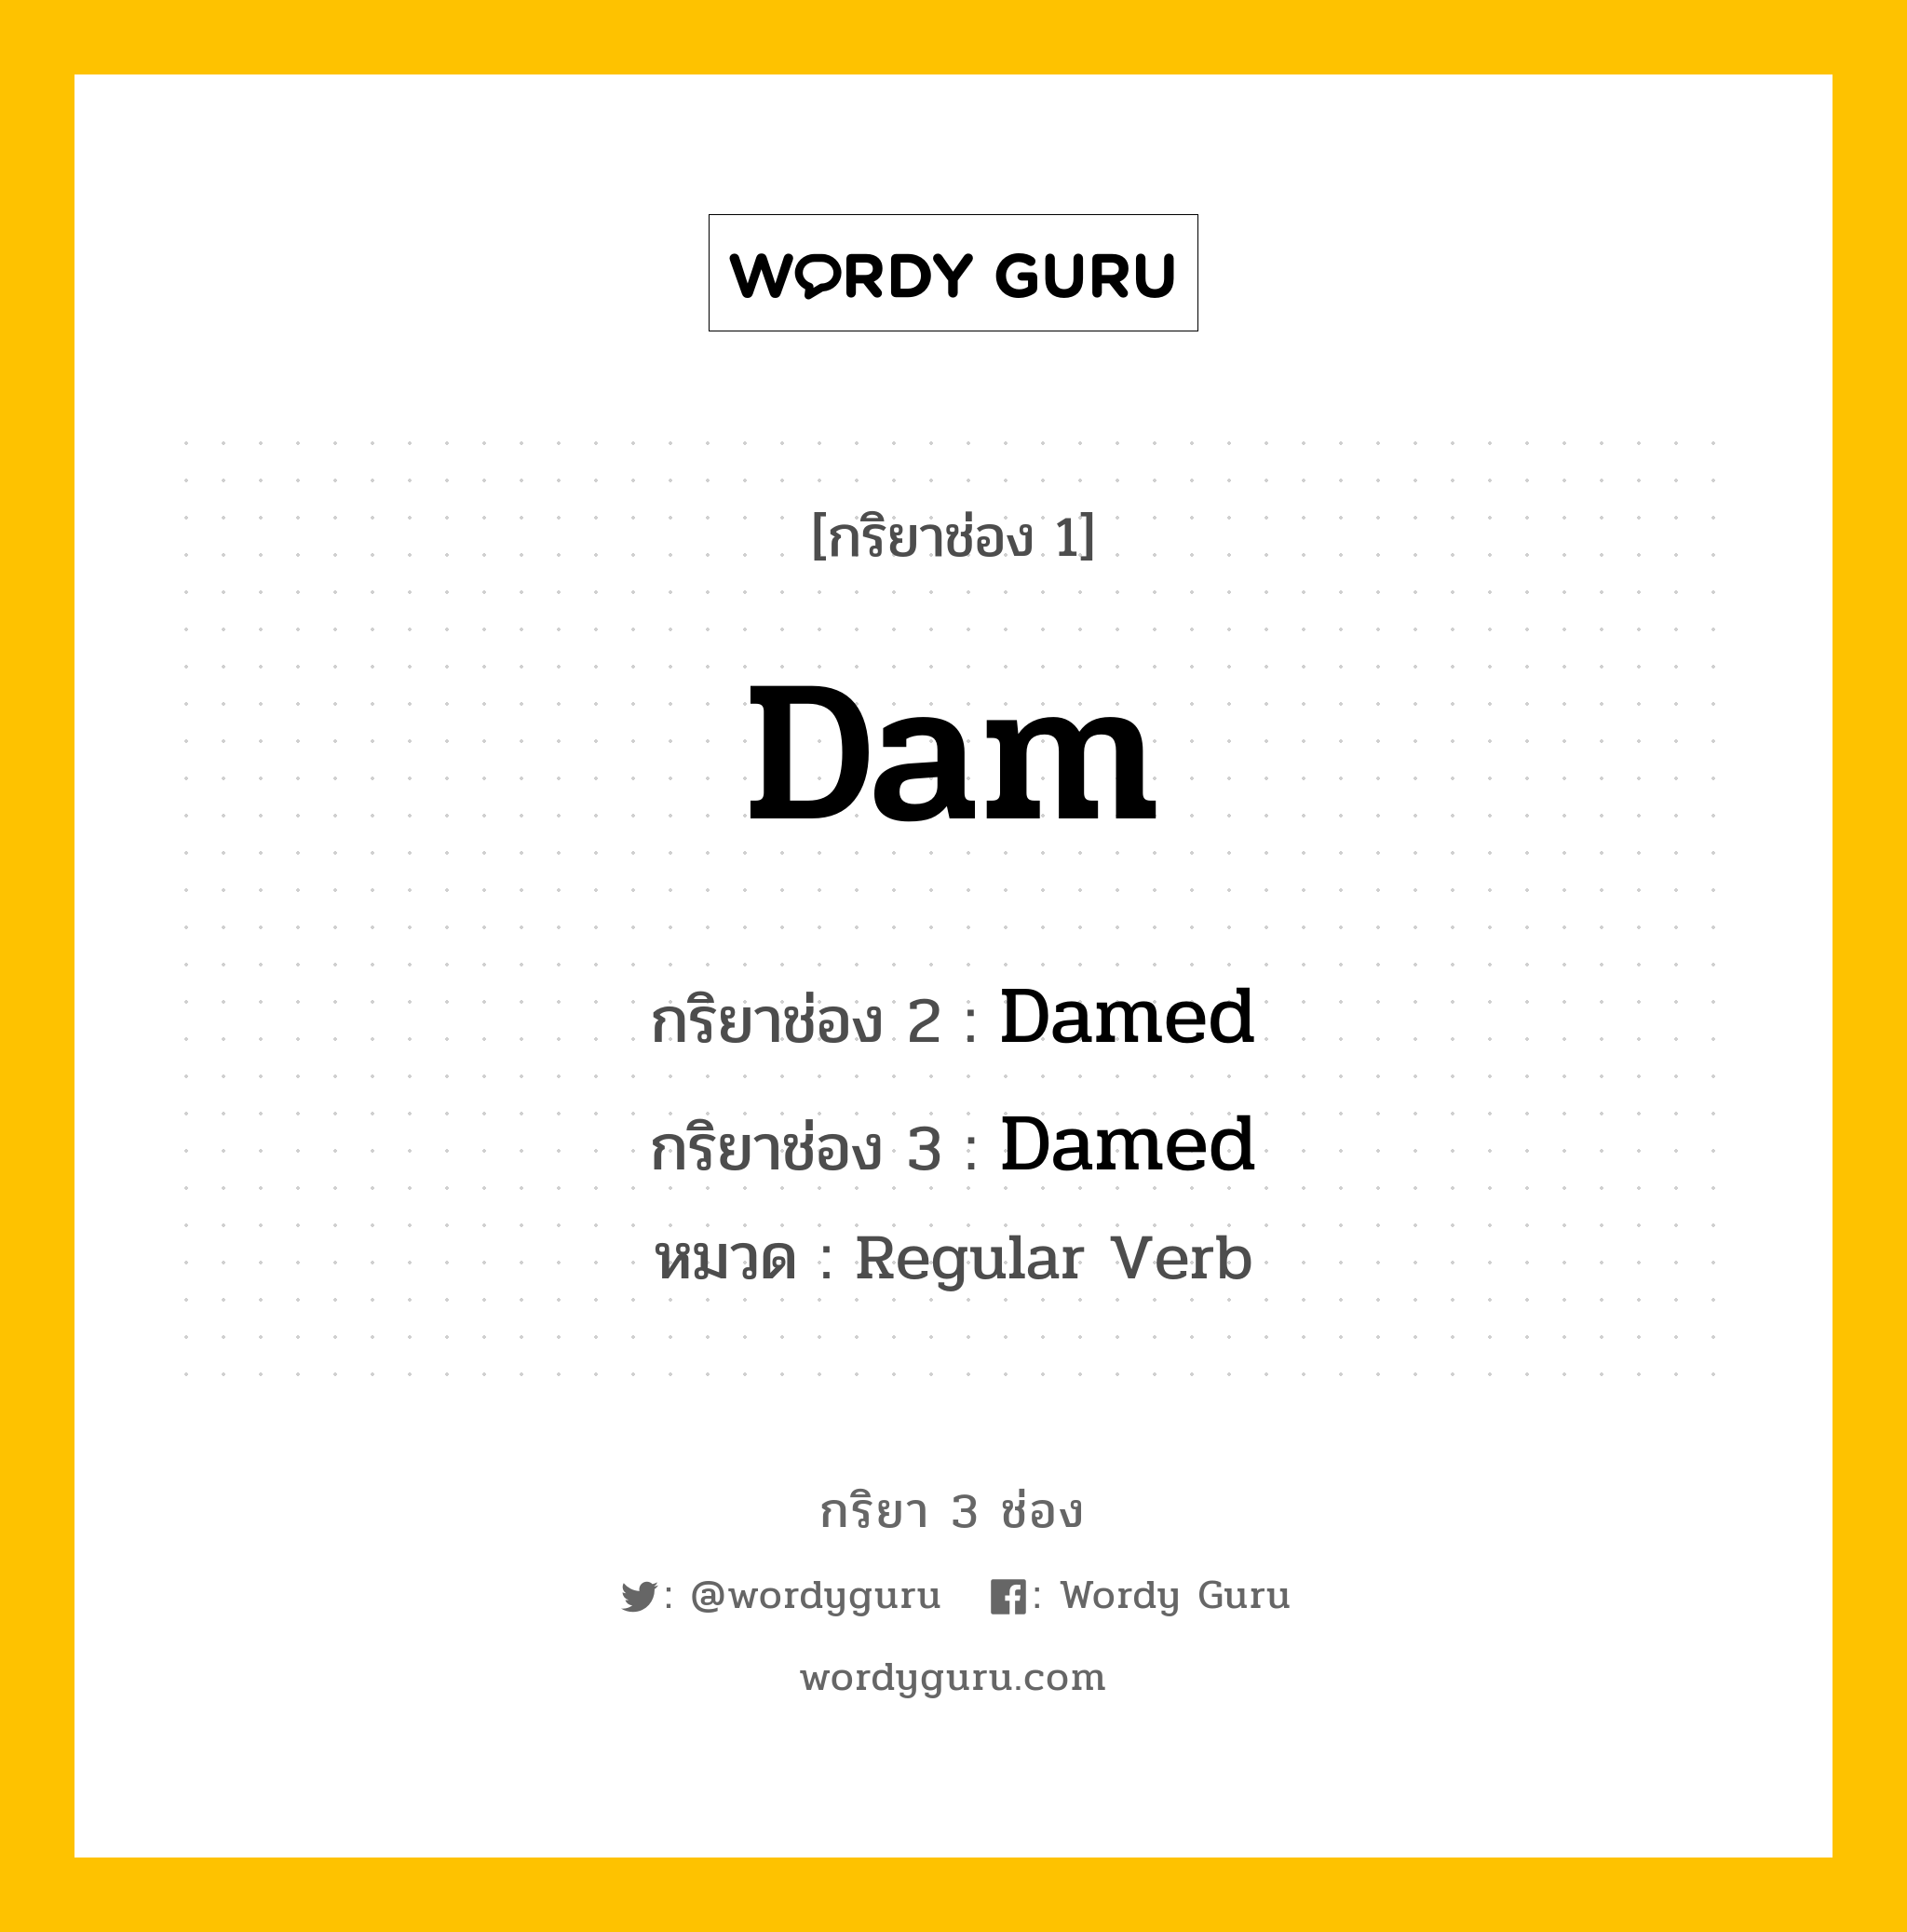 กริยา 3 ช่อง: Dam ช่อง 2 Dam ช่อง 3 คืออะไร, กริยาช่อง 1 Dam กริยาช่อง 2 Damed กริยาช่อง 3 Damed หมวด Regular Verb หมวด Regular Verb